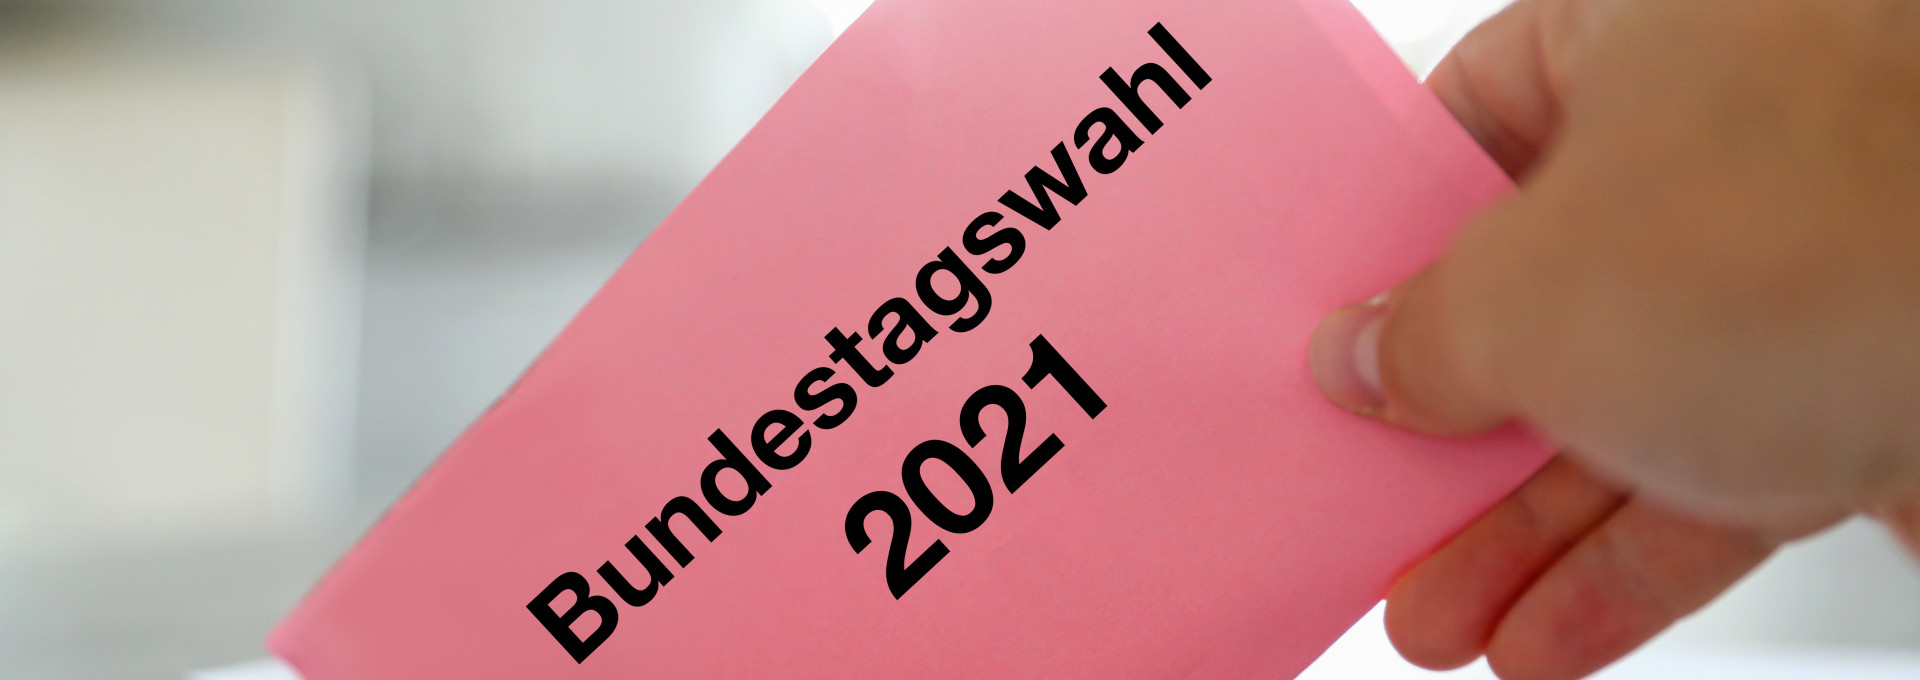 Hand wirft Umschlag mit Aufschrift "Bundestagswahl 2021" in Wahlurne